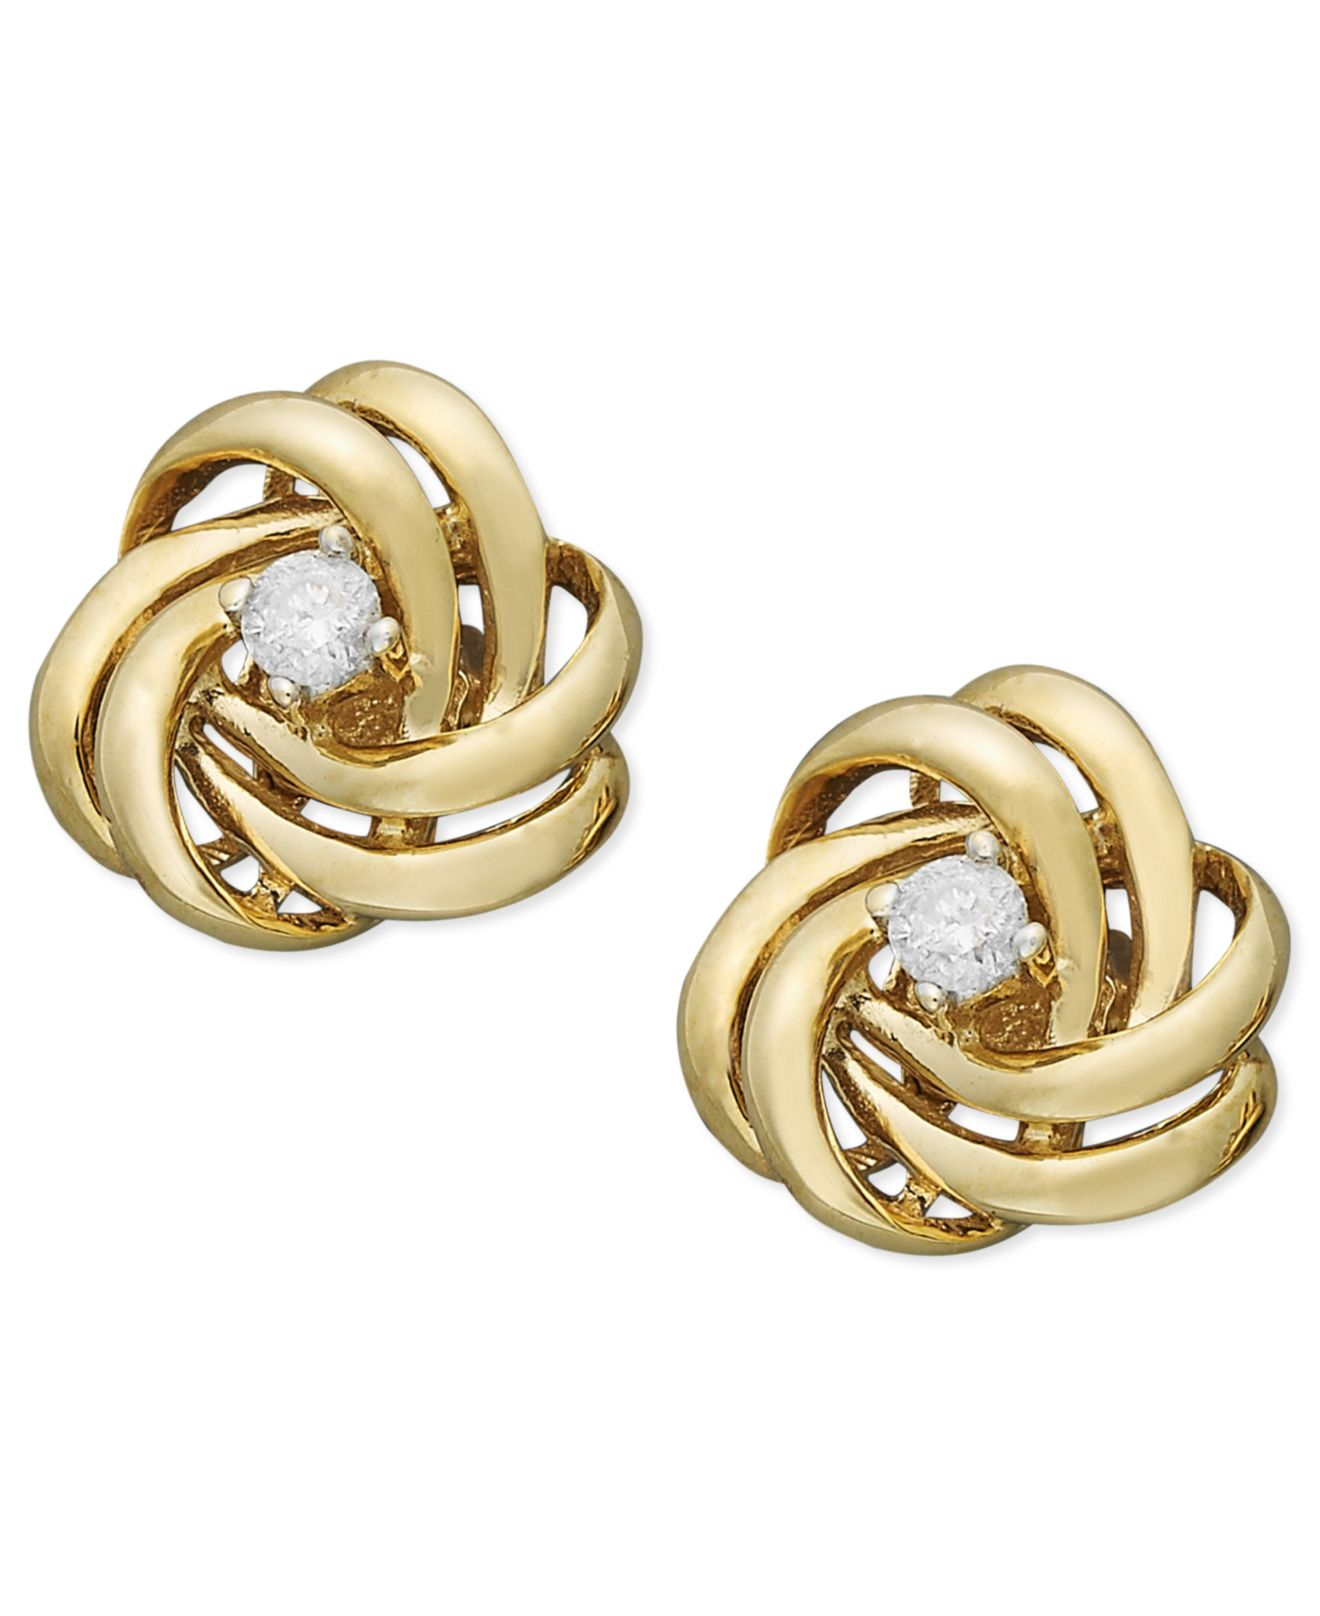 Wrapped in Love 14k Gold Diamond Knot Earrings (1/10 Ct. T.w.) in ...